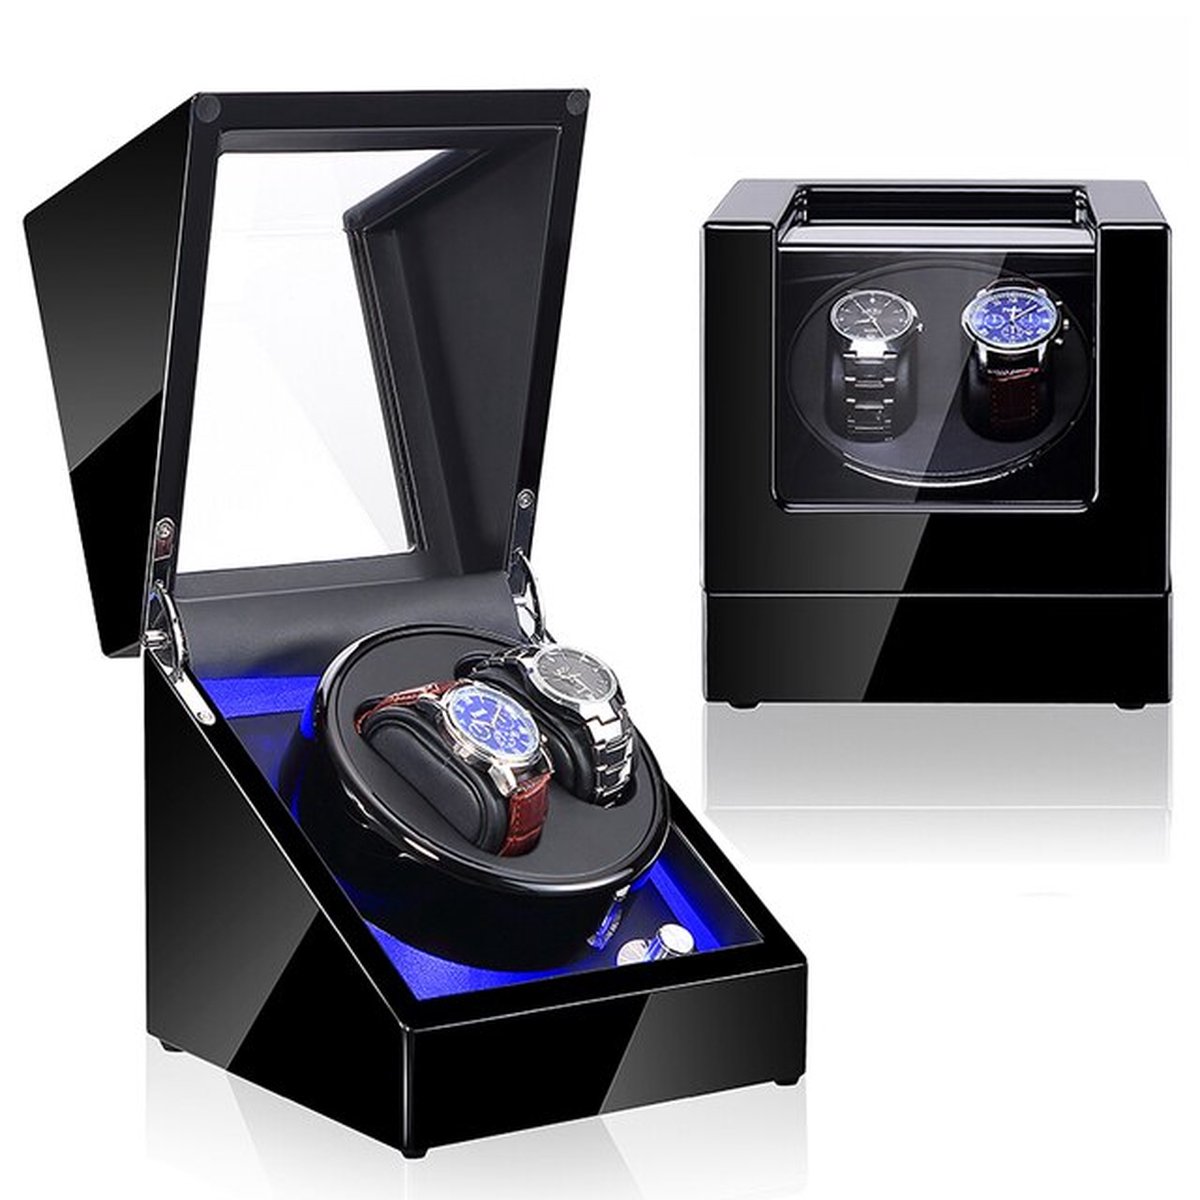 Olvy Luxe Watchwinder voor 2 Horloges - Met LED Verlichting - Zwarte Lak - Dubbele Watchwinder - Horloge Opwinder - Olvy